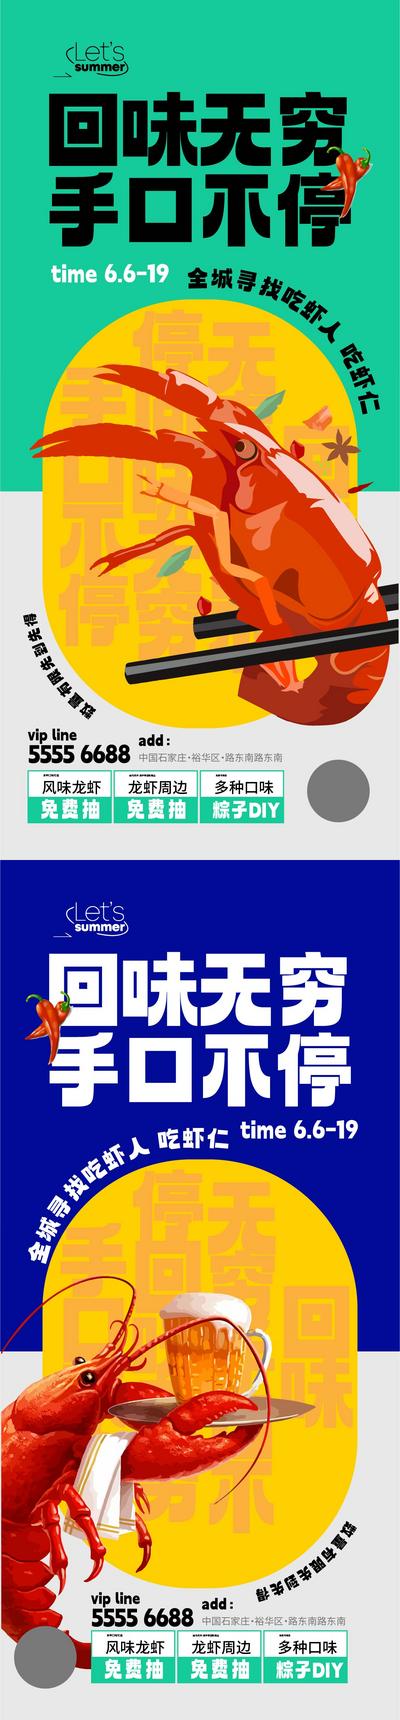 南门网 广告 海报 地产 美食 活动 美食节 烧烤 小龙虾 啤酒 炸鸡 大气 系列